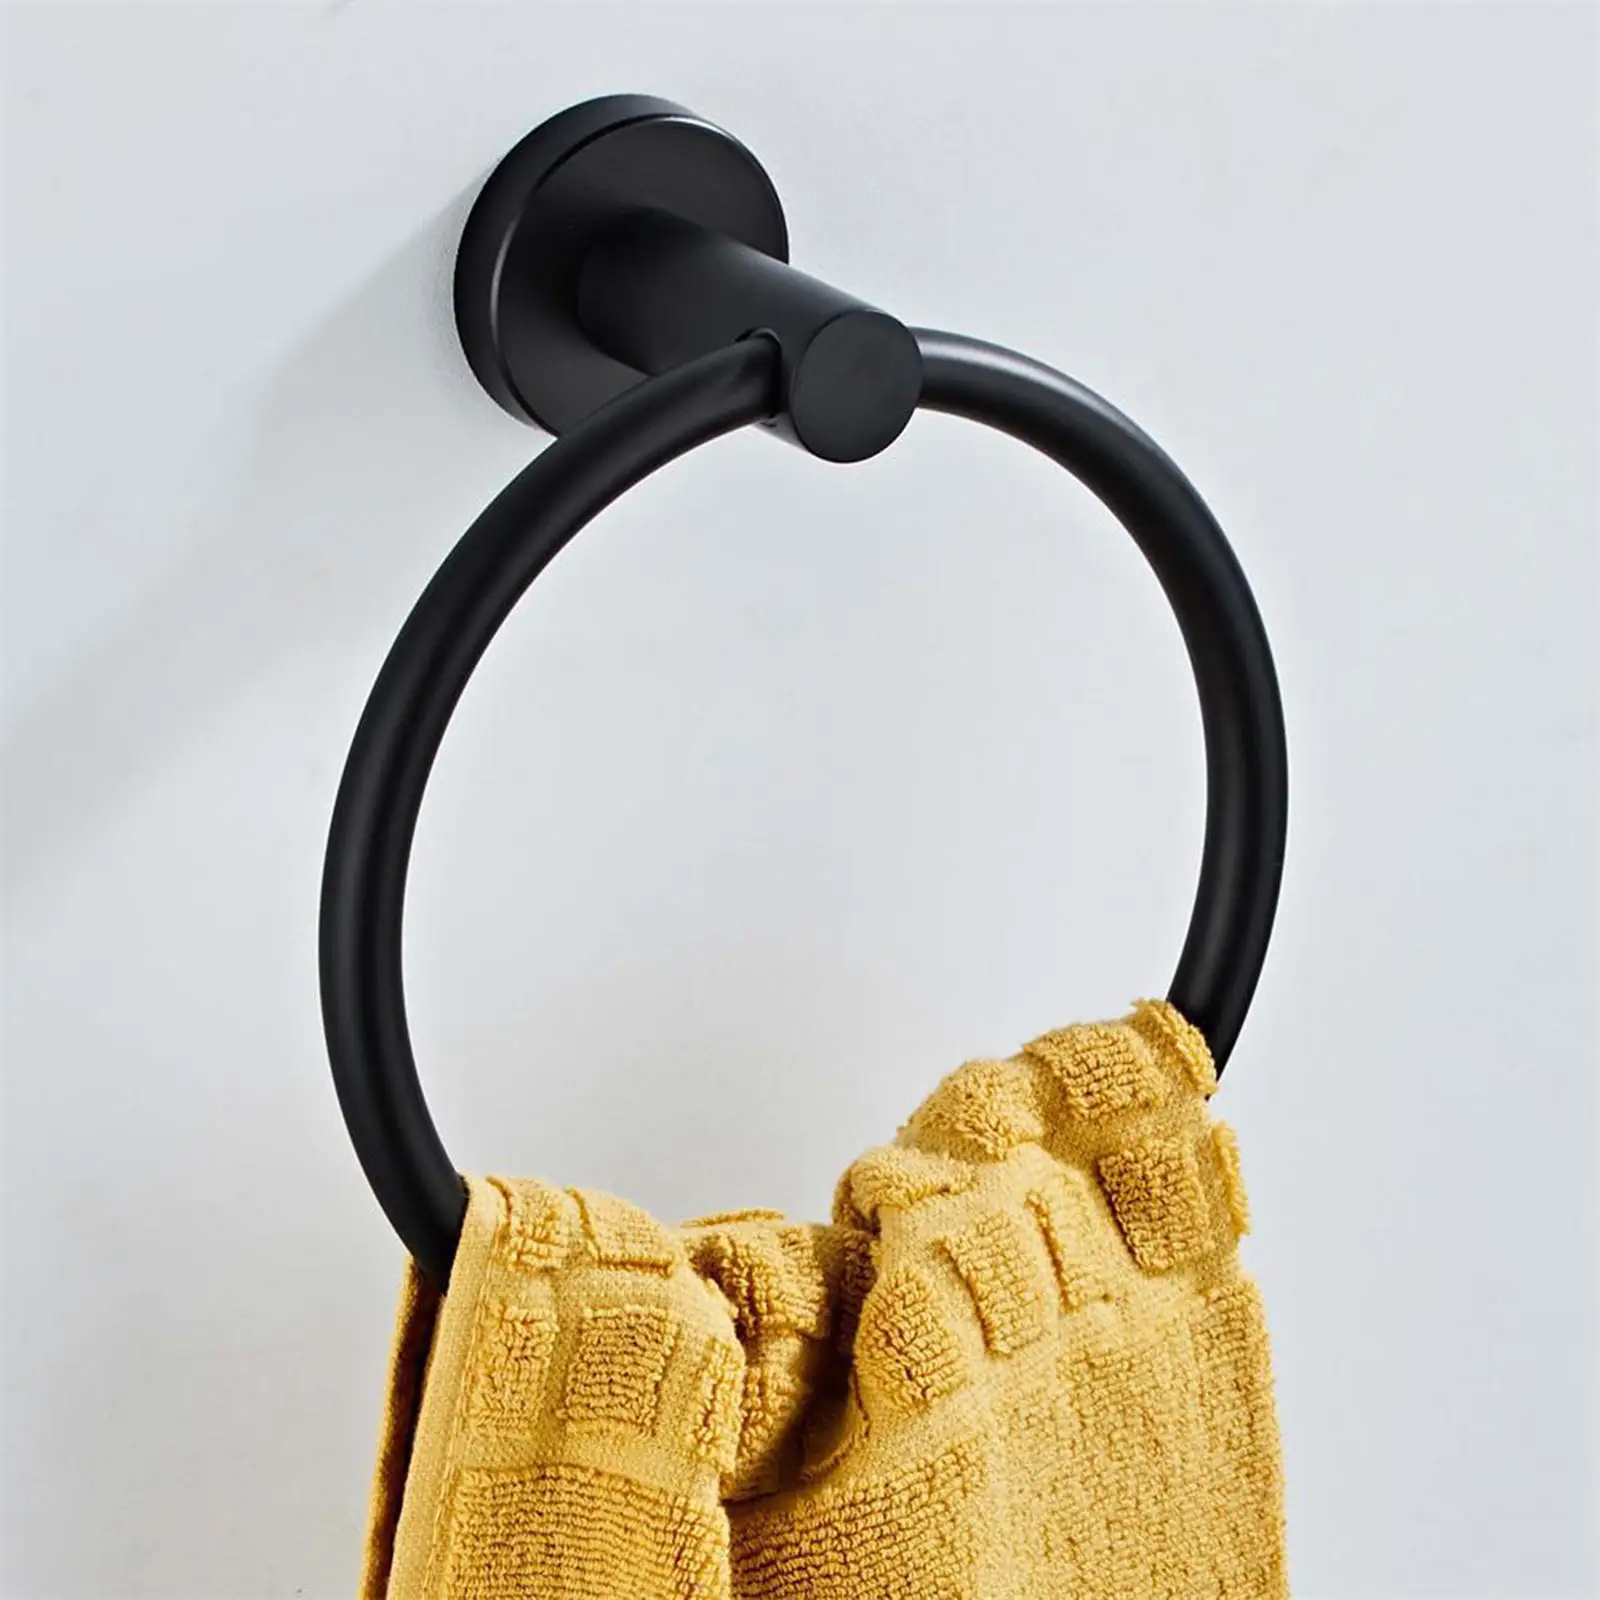 Stainless Steel Towel Rings for Bathroom Hand Towel Holder Modern Circle Towel Hanger Round Towel Rack Wall Mounted Towel Rings